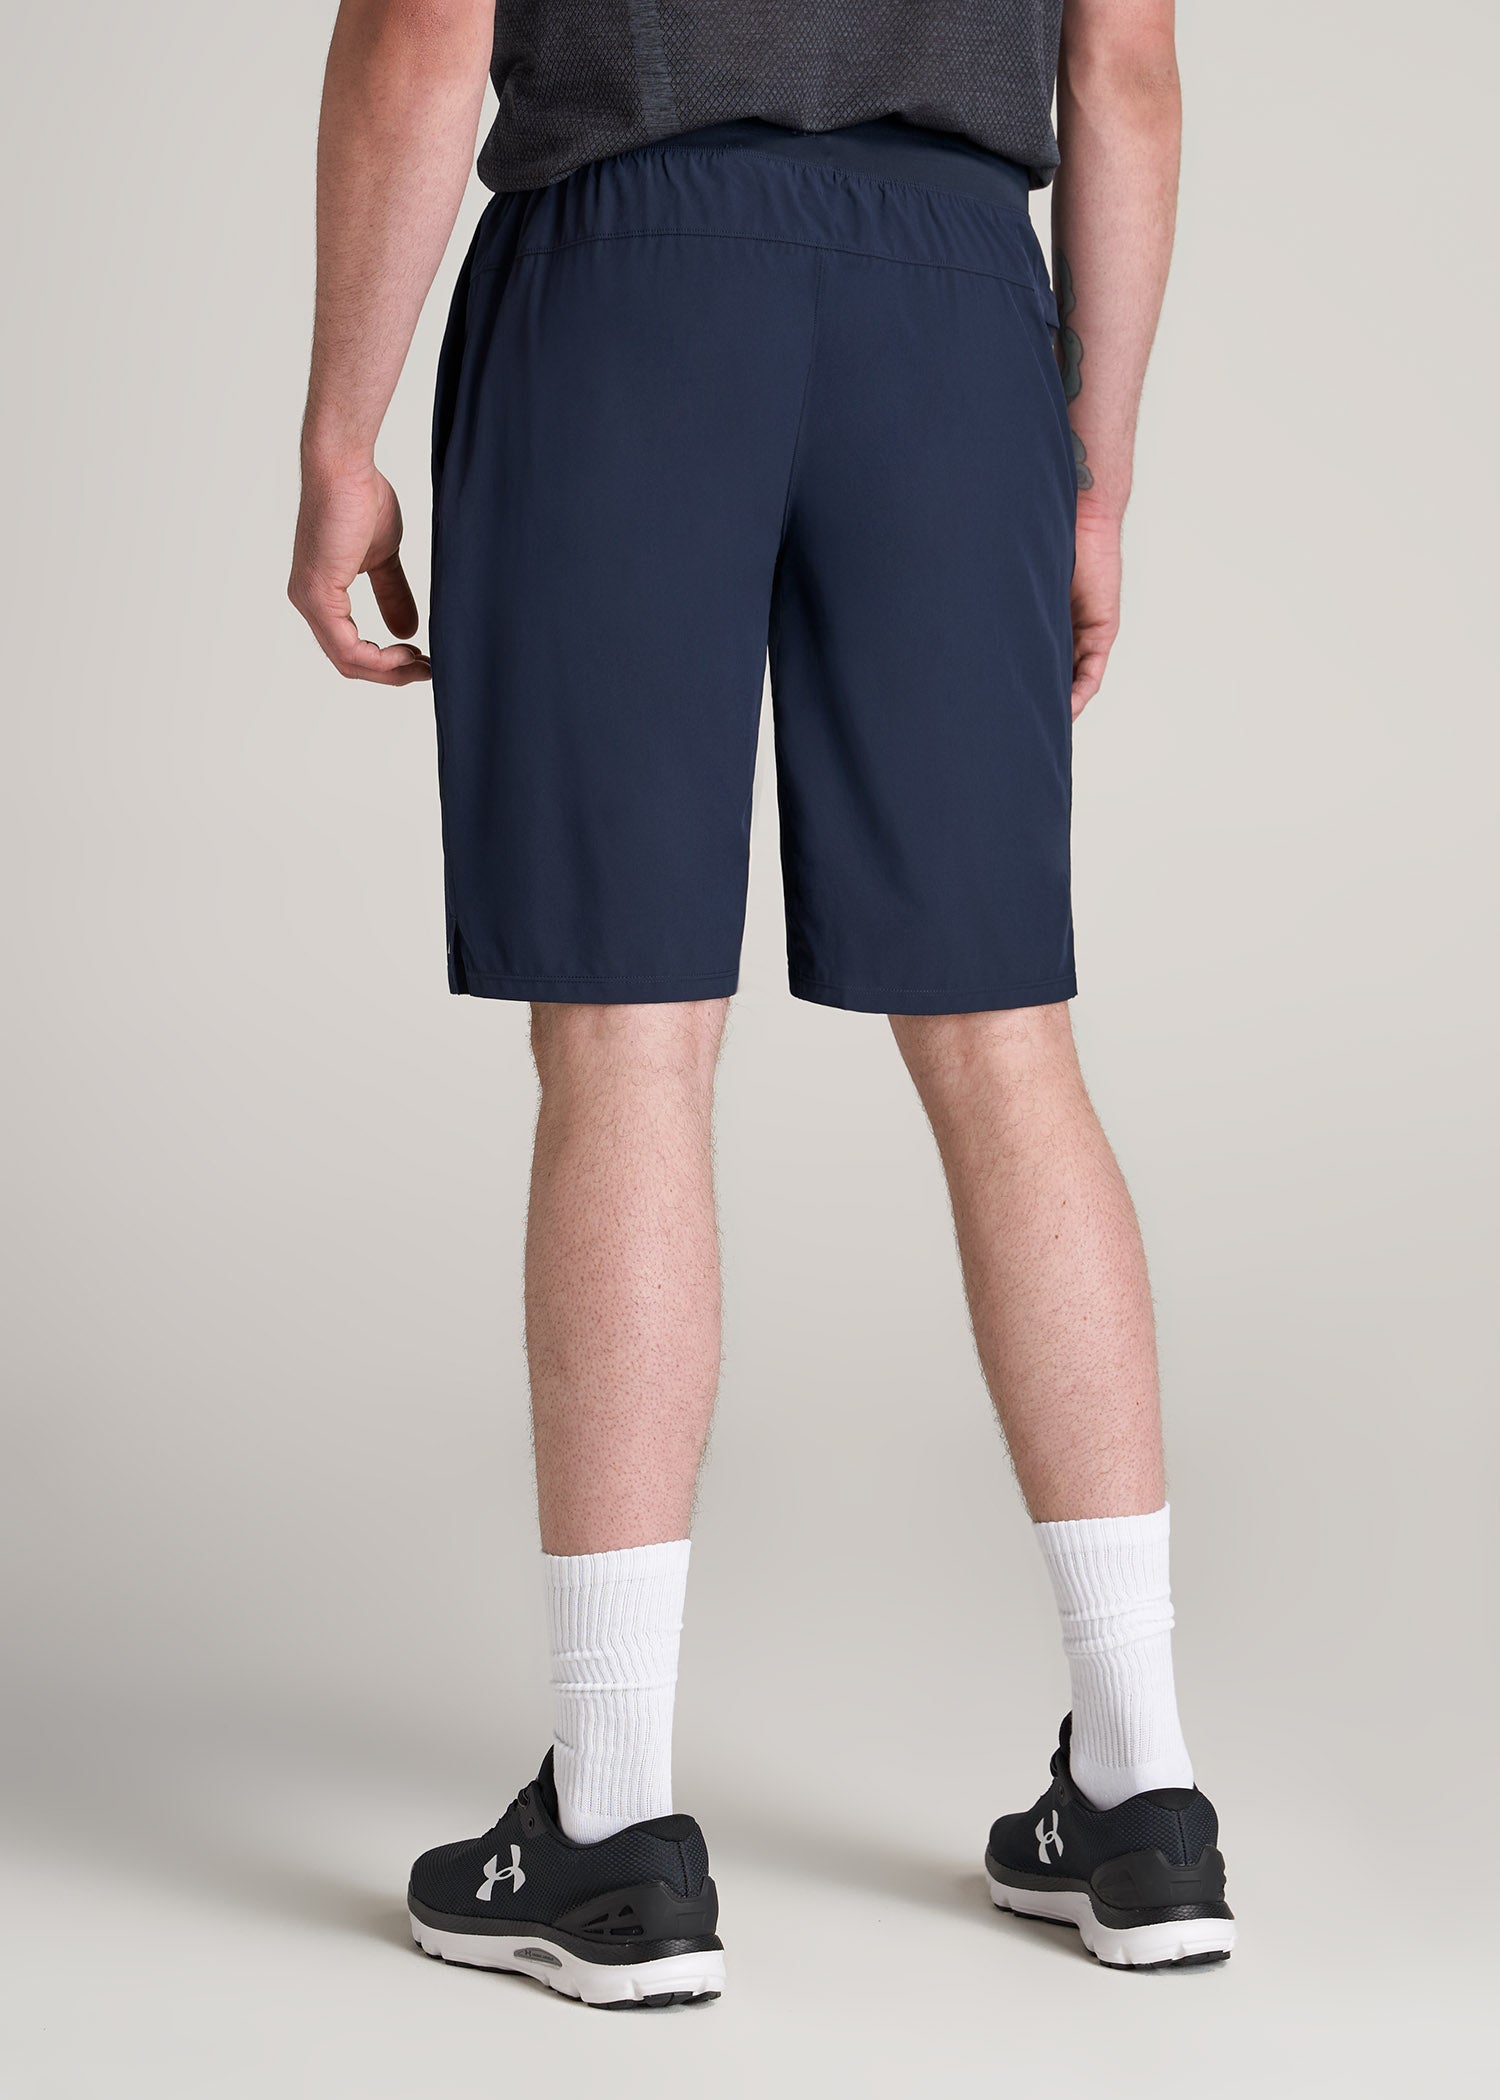 https://americantall.com/cdn/shop/products/American-Tall-Men-Performance-Stretch-Woven-Shorts-Navy-back_1946x.jpg?v=1658434536